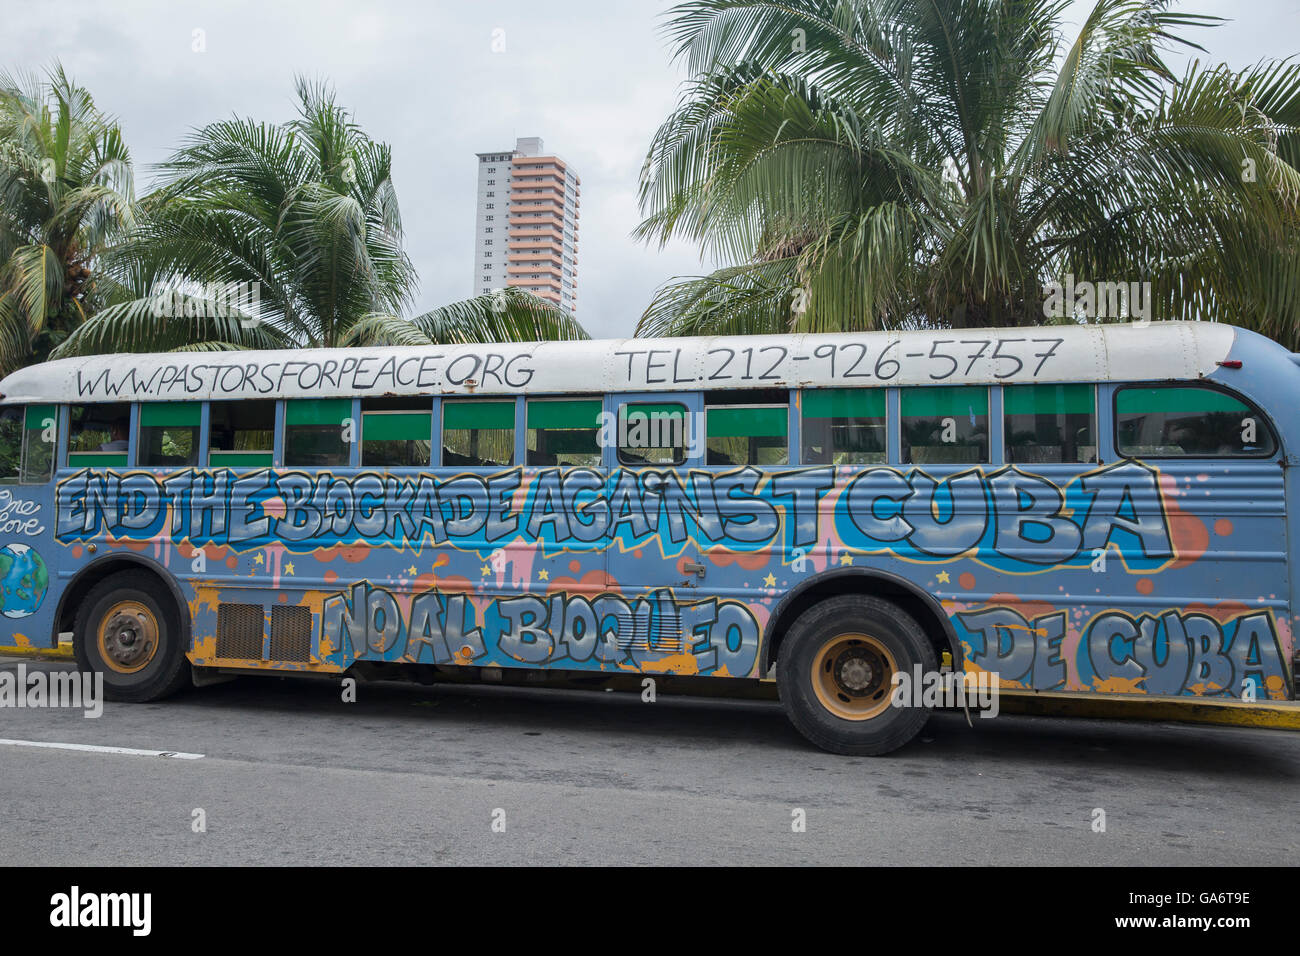 Bus von Pastoren für den Frieden, mit anti-trade-Embargo Slogan gemalt auf der Seite verwendet parkten außerhalb Hotel Nacional de Cuba, Alt-Havanna Stockfoto